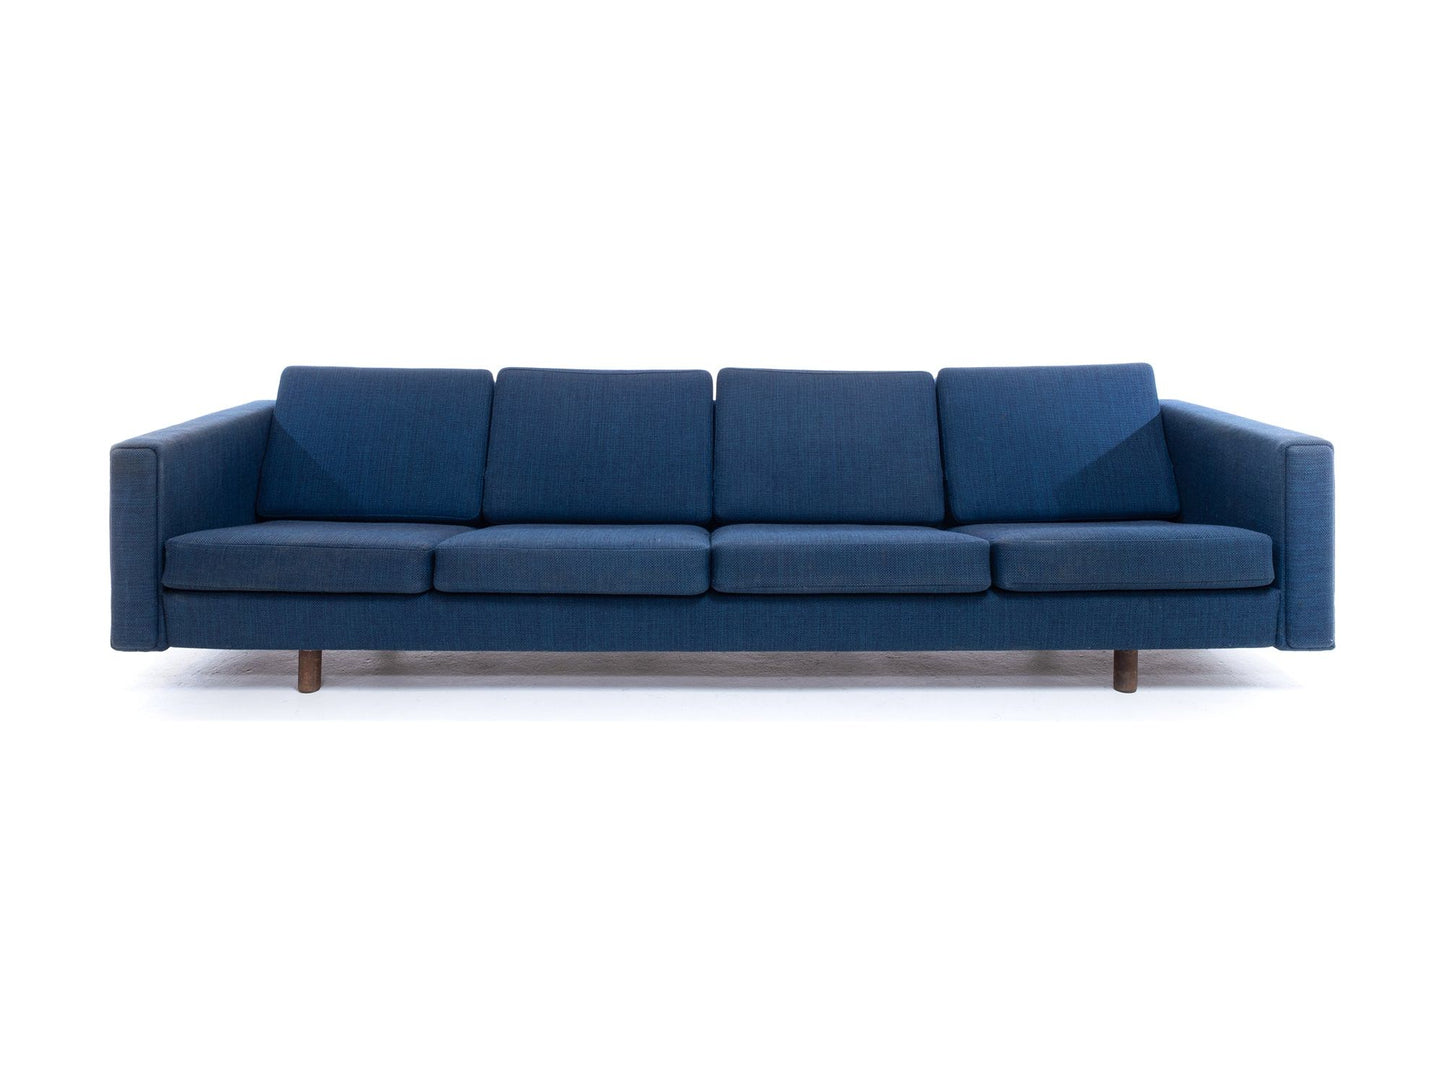 GE300 Sofa by Hans Wegner for Getama | Habitus London